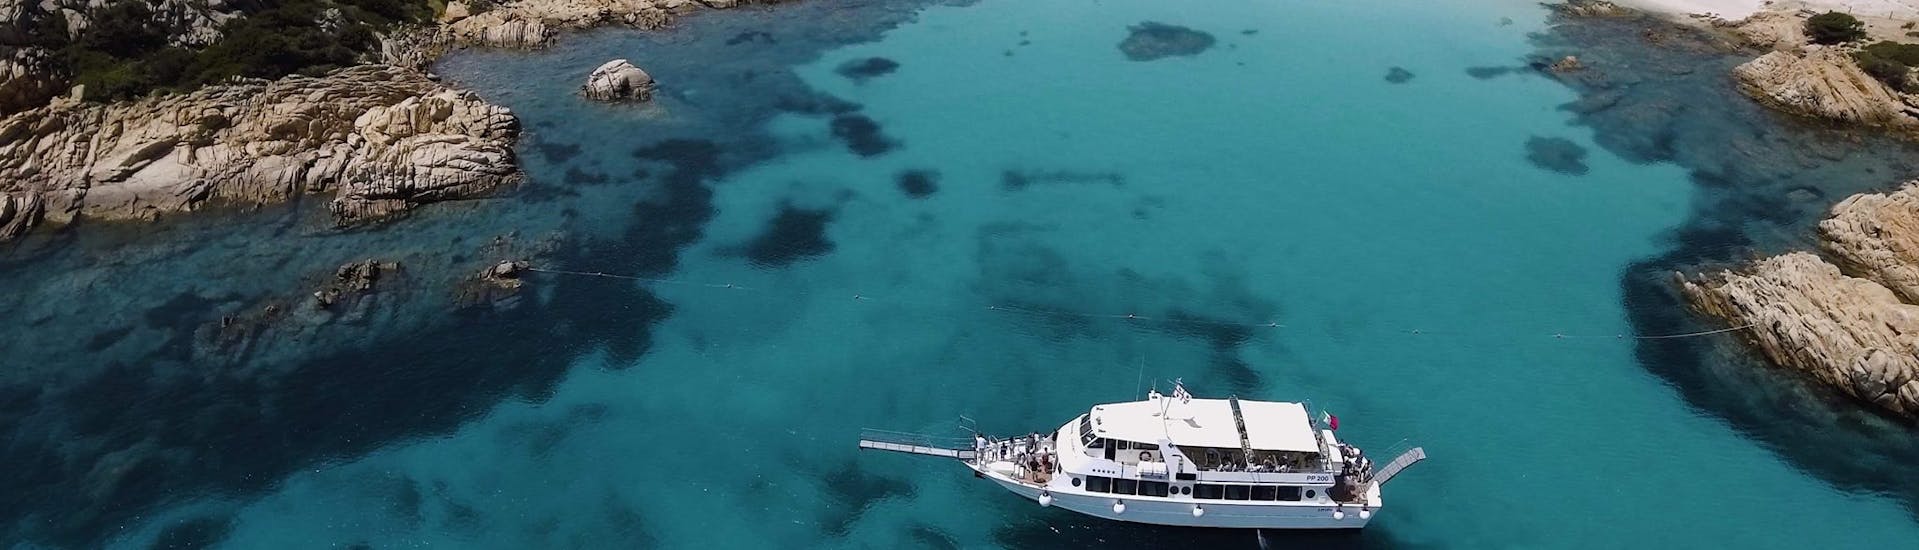 Una bella e spaziosa barca naviga attraverso la baia durante la gita in barca delle 4 isole all'arcipelago di La Maddalena da Palau.